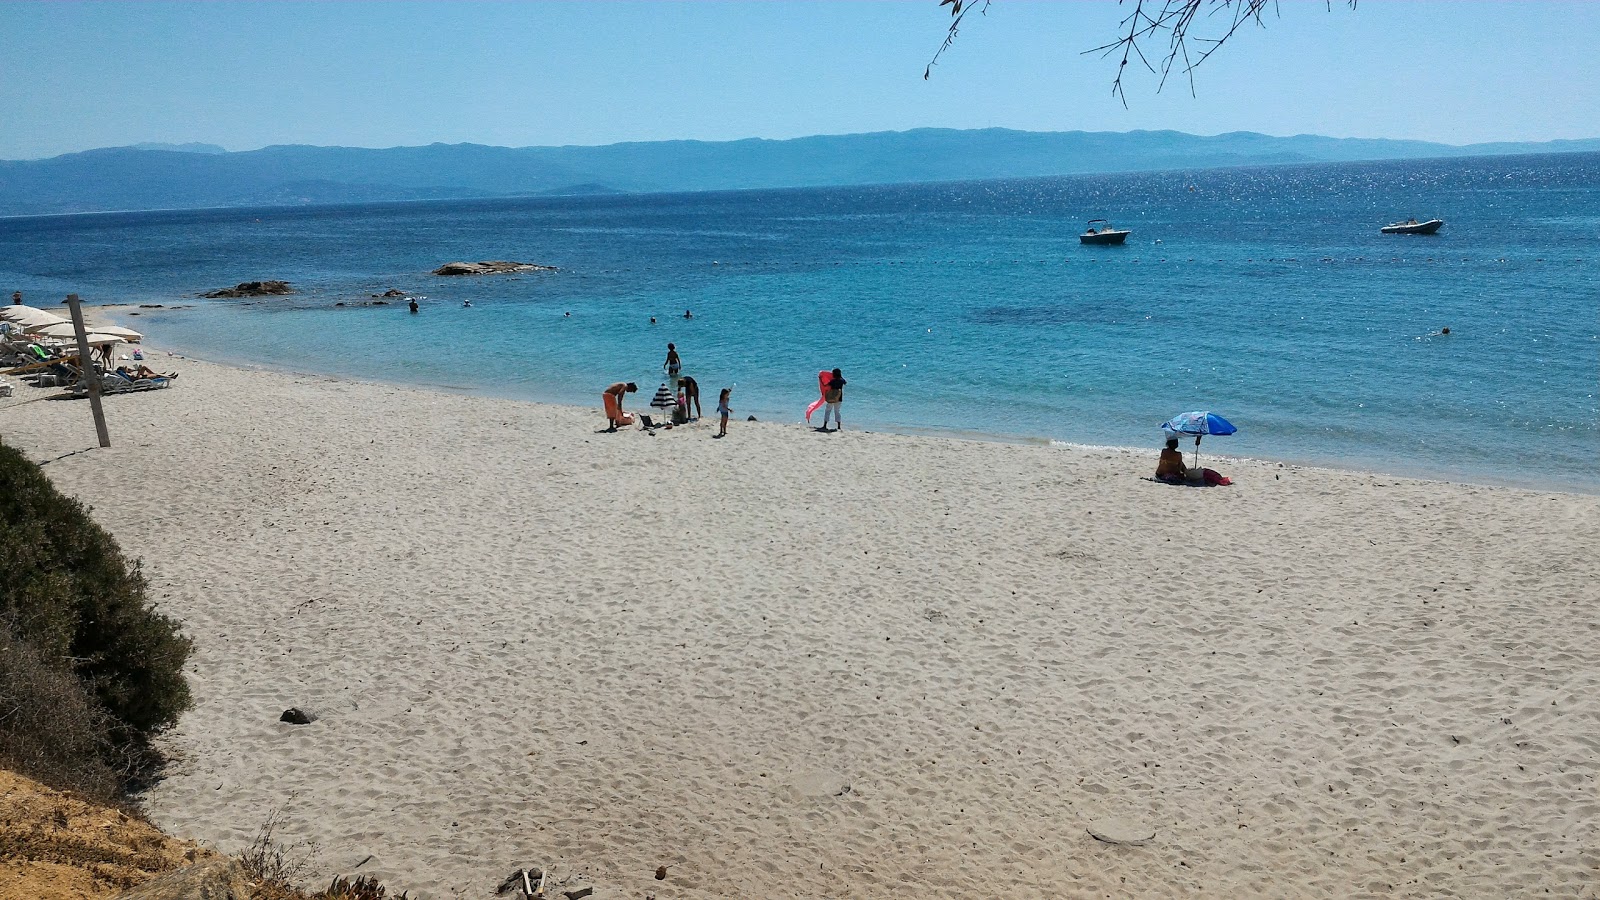 Ariadne Plajı'in fotoğrafı çok temiz temizlik seviyesi ile